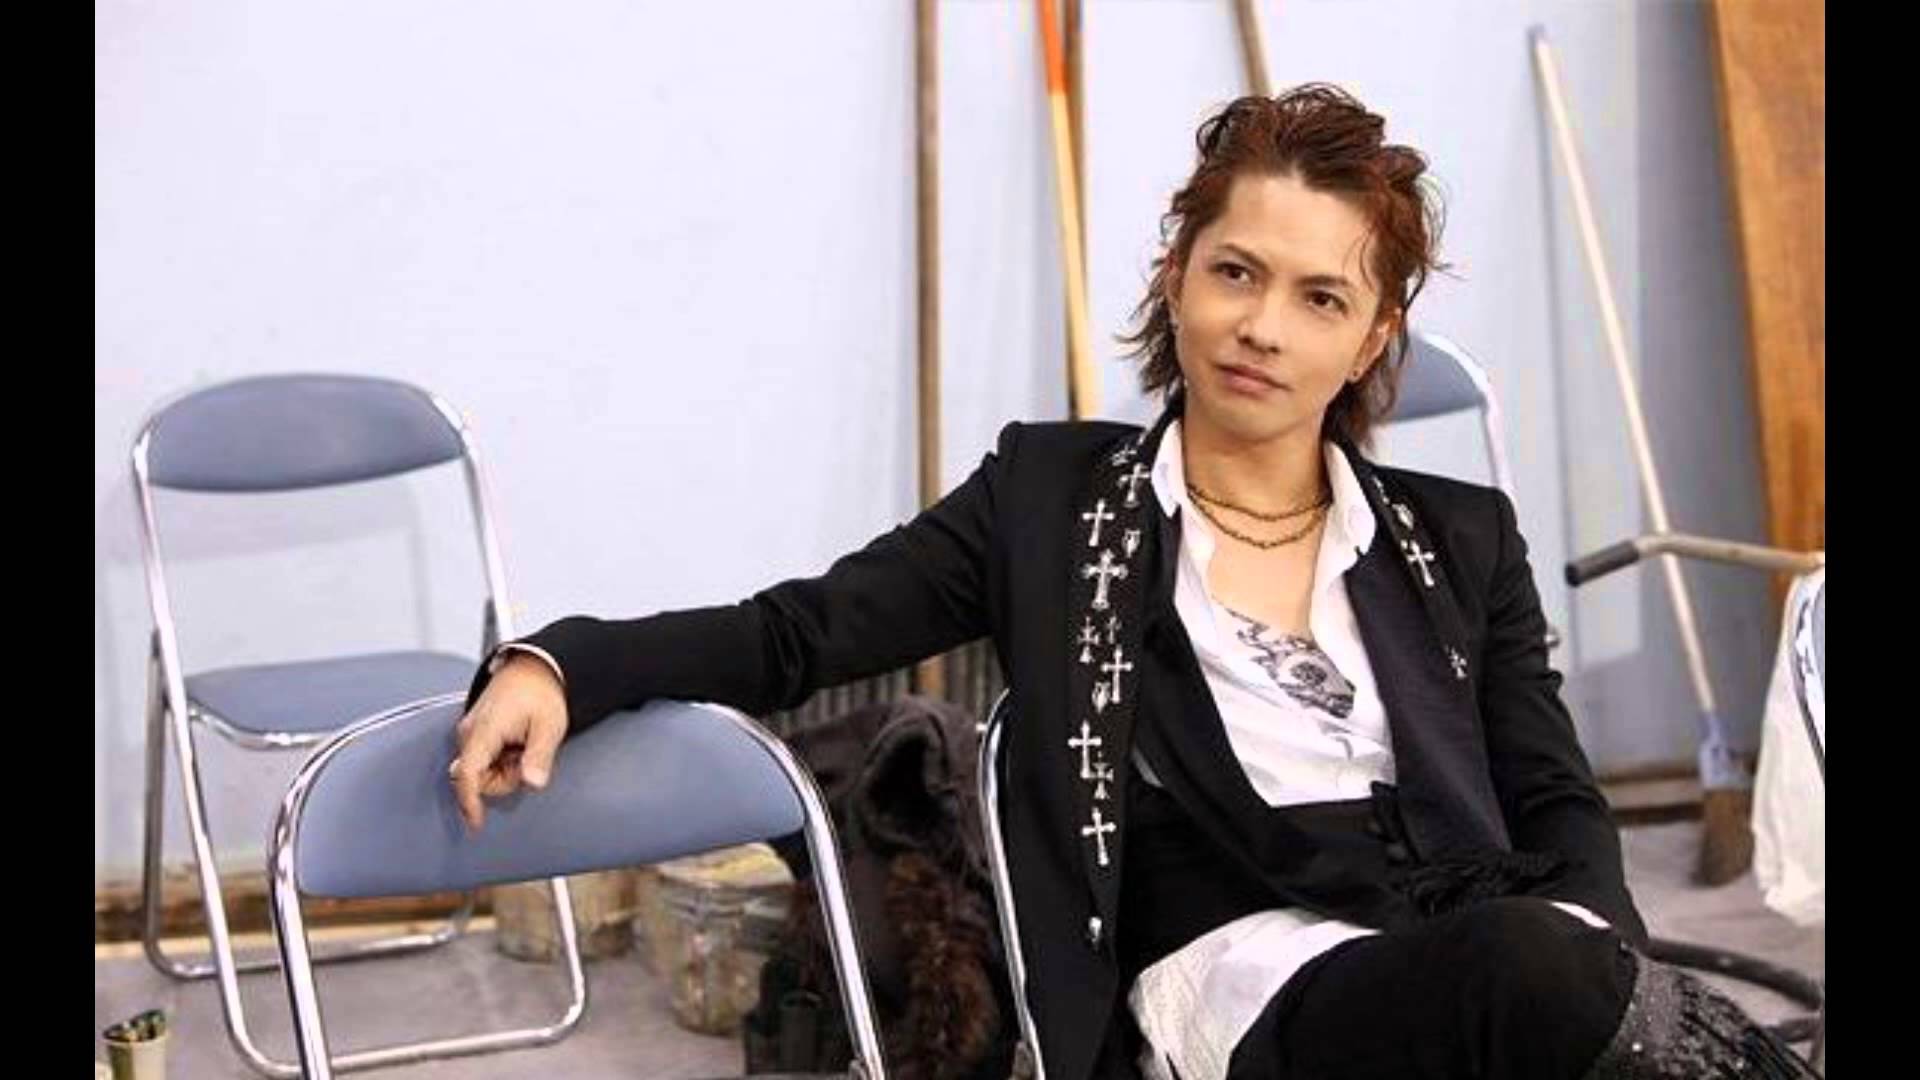 Hyde與yoshiki的神 神夢幻合照 Hyde大神在演藝圈的超強人脈盤點 Hyde Yoshiki 神 L Arc En Ciel 彩虹樂團 影劇星聞 妞新聞